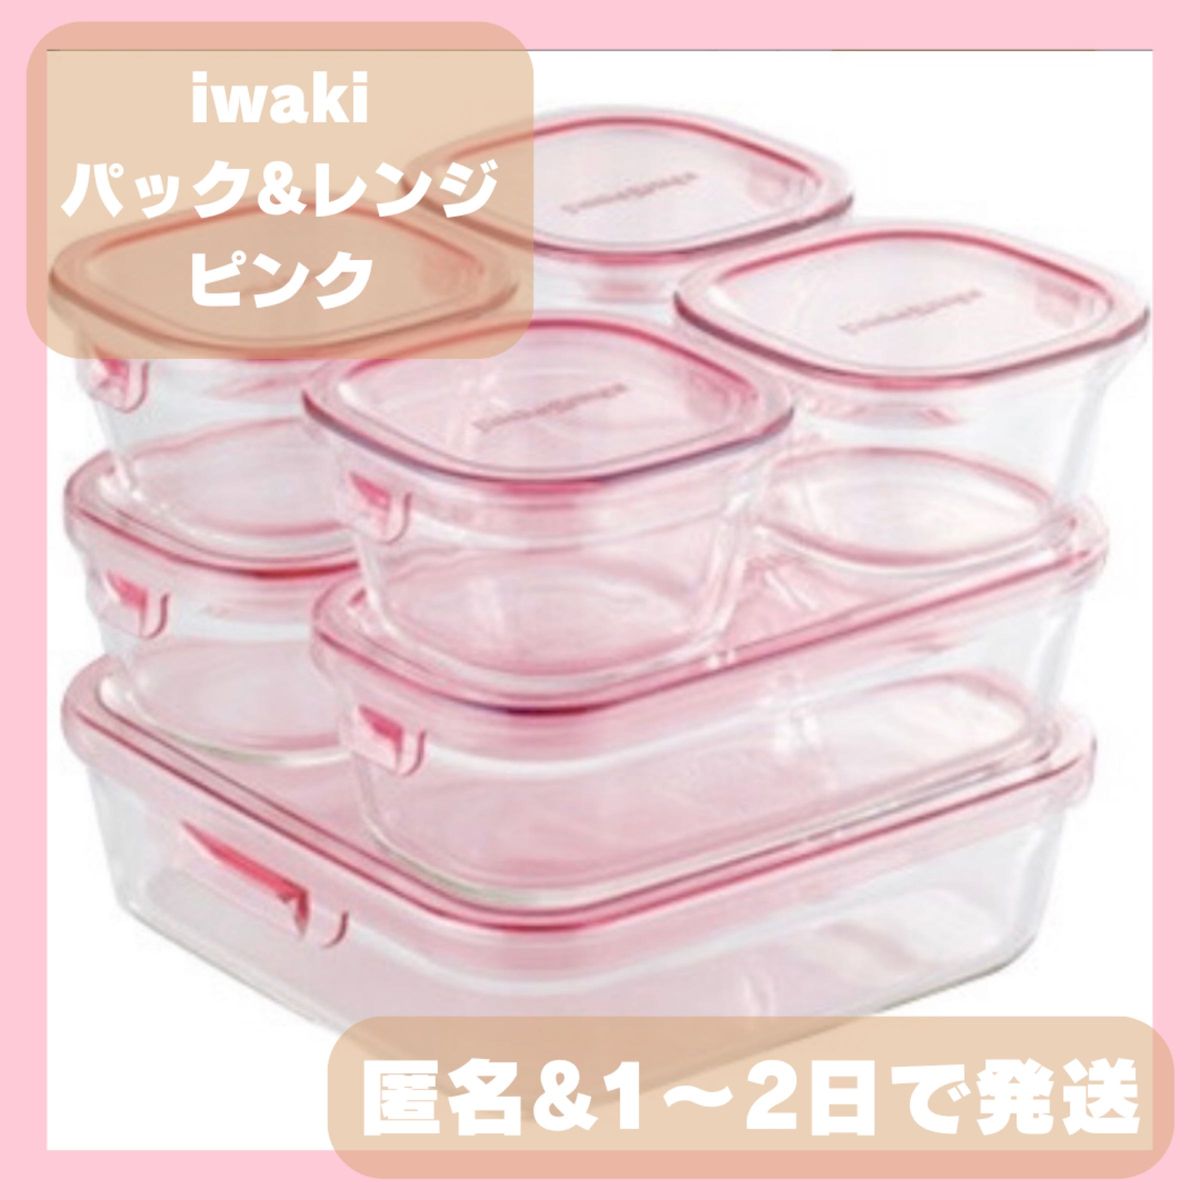 ★新品★iwaki イワキ 耐熱ガラス保存容器 ７点セット 人気のピンク iwaki イワキ 耐熱ガラス 保存容器 パックレンジ